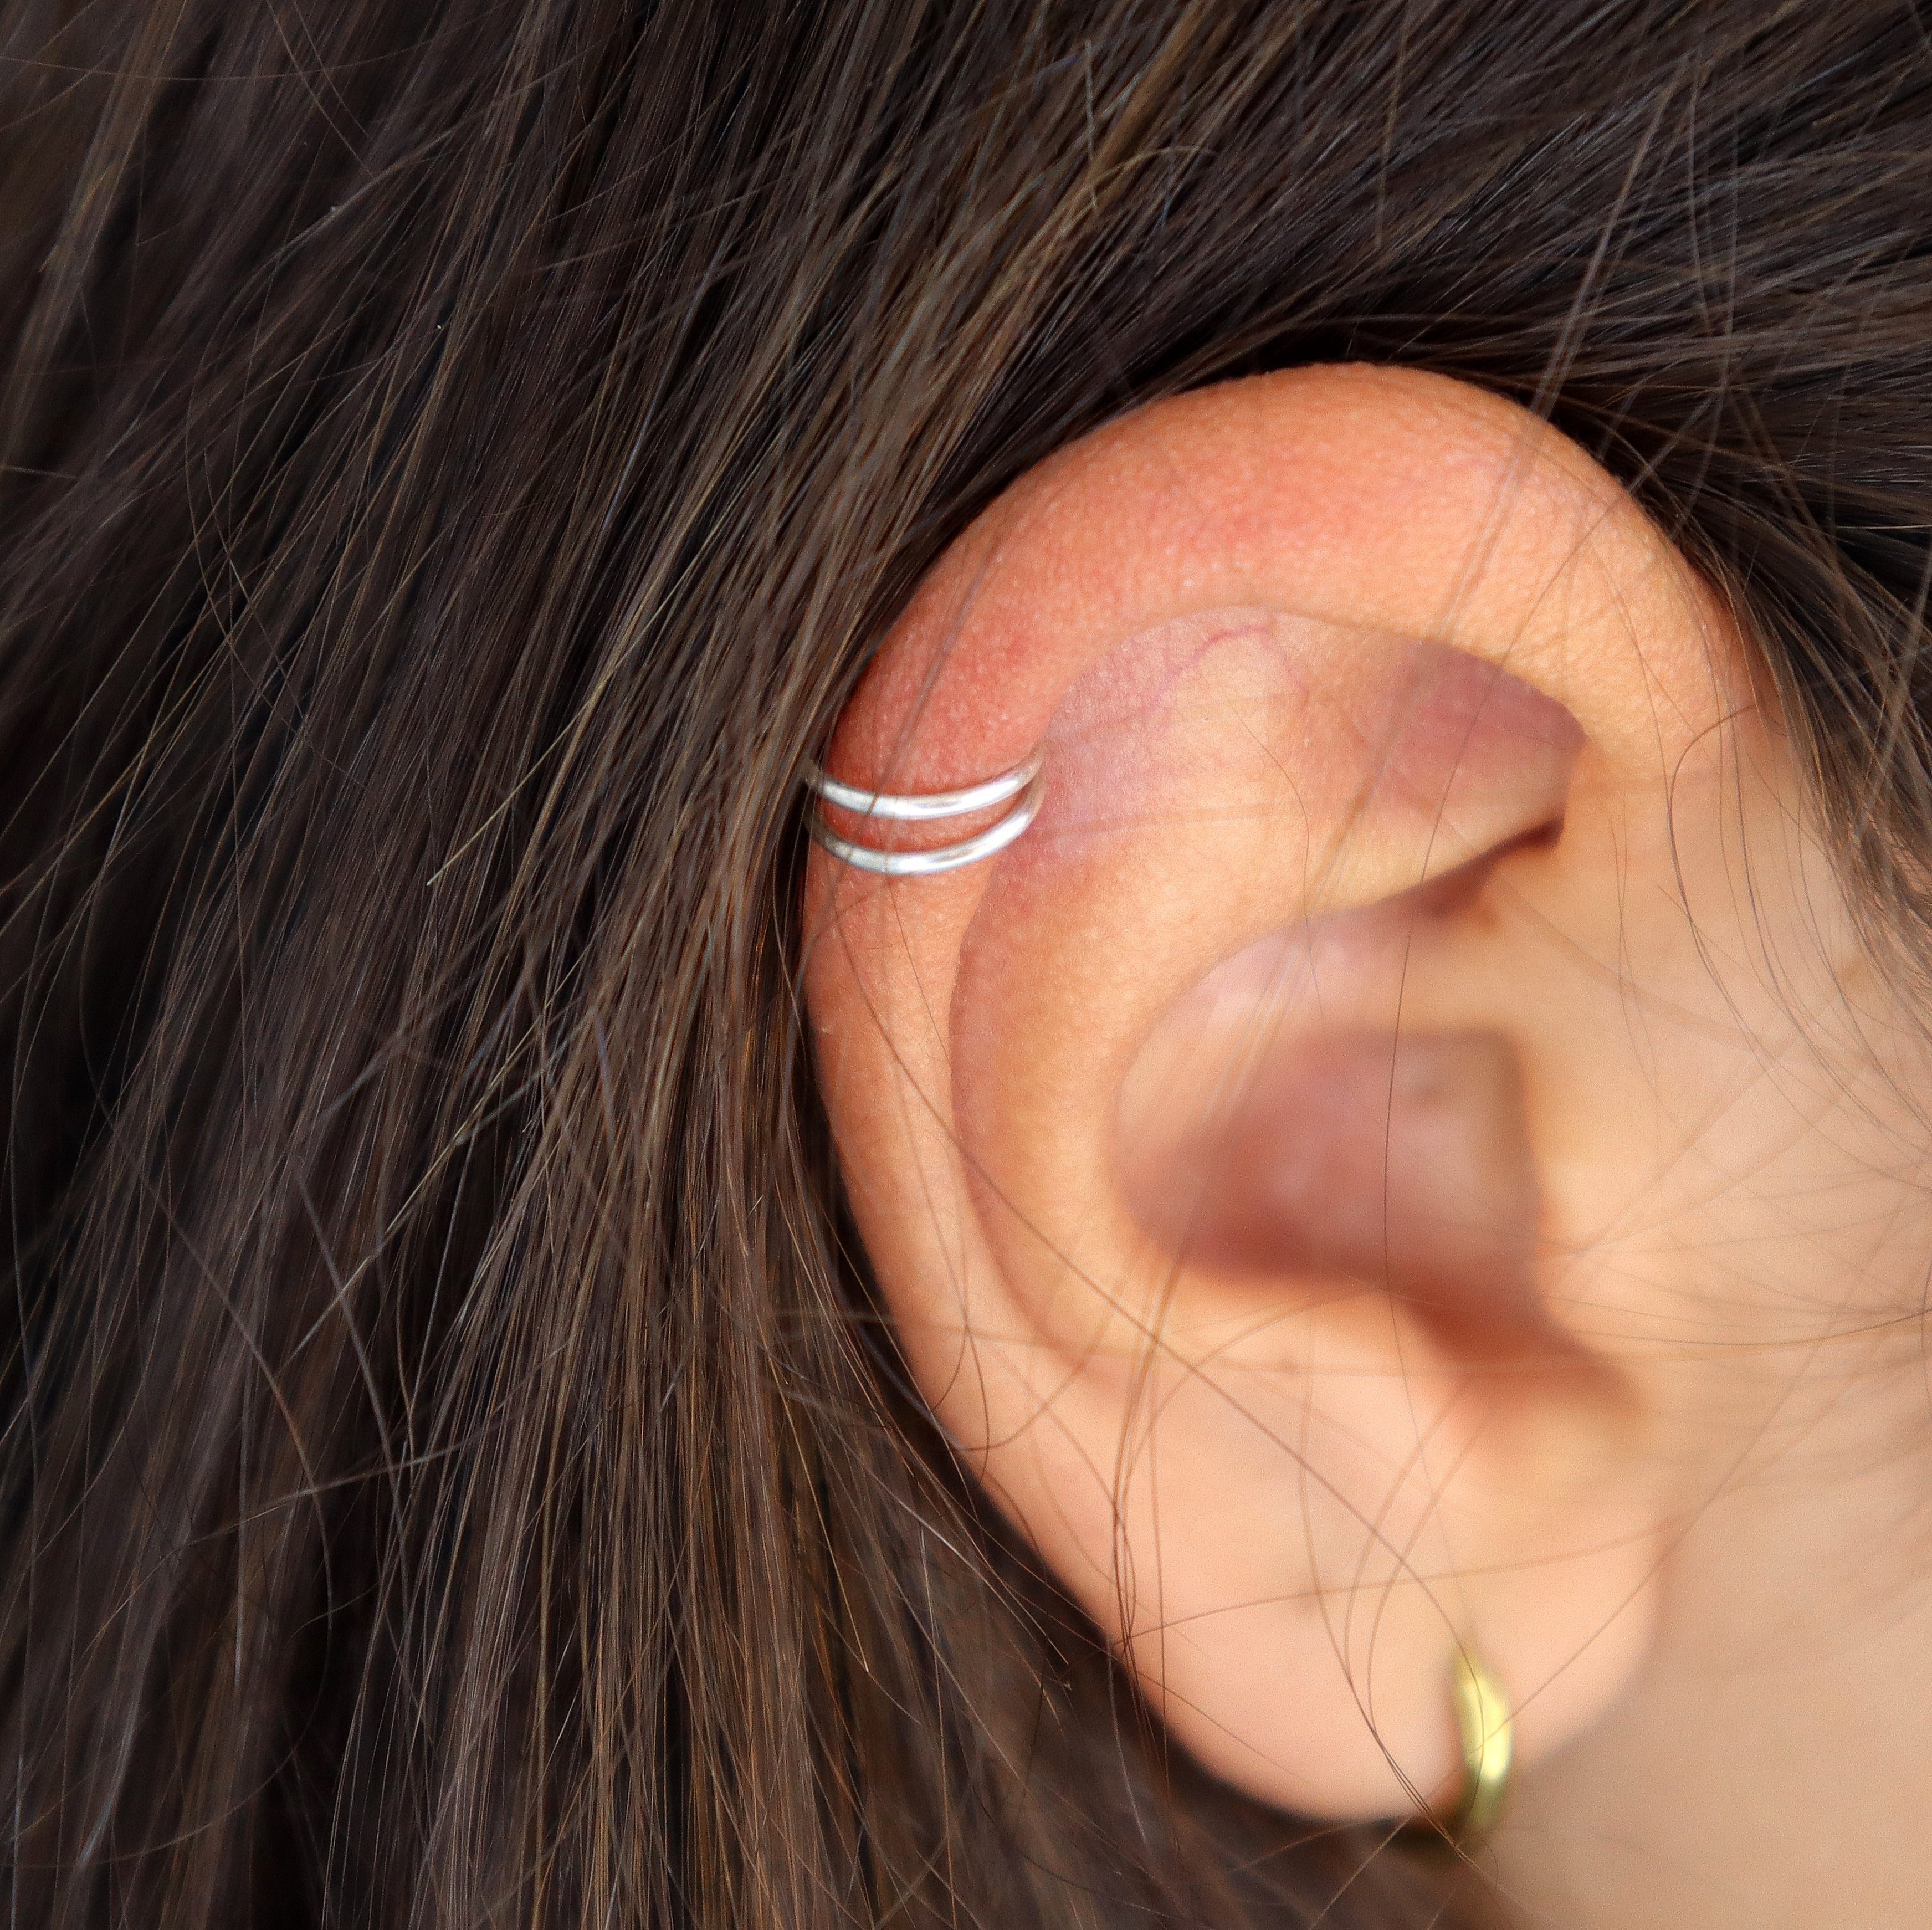 Cheap Helix Piercing Flower Lobe Stainless Steel Piercing Jewelry Barbell  Ear Studs Cartilage Earring | Joom